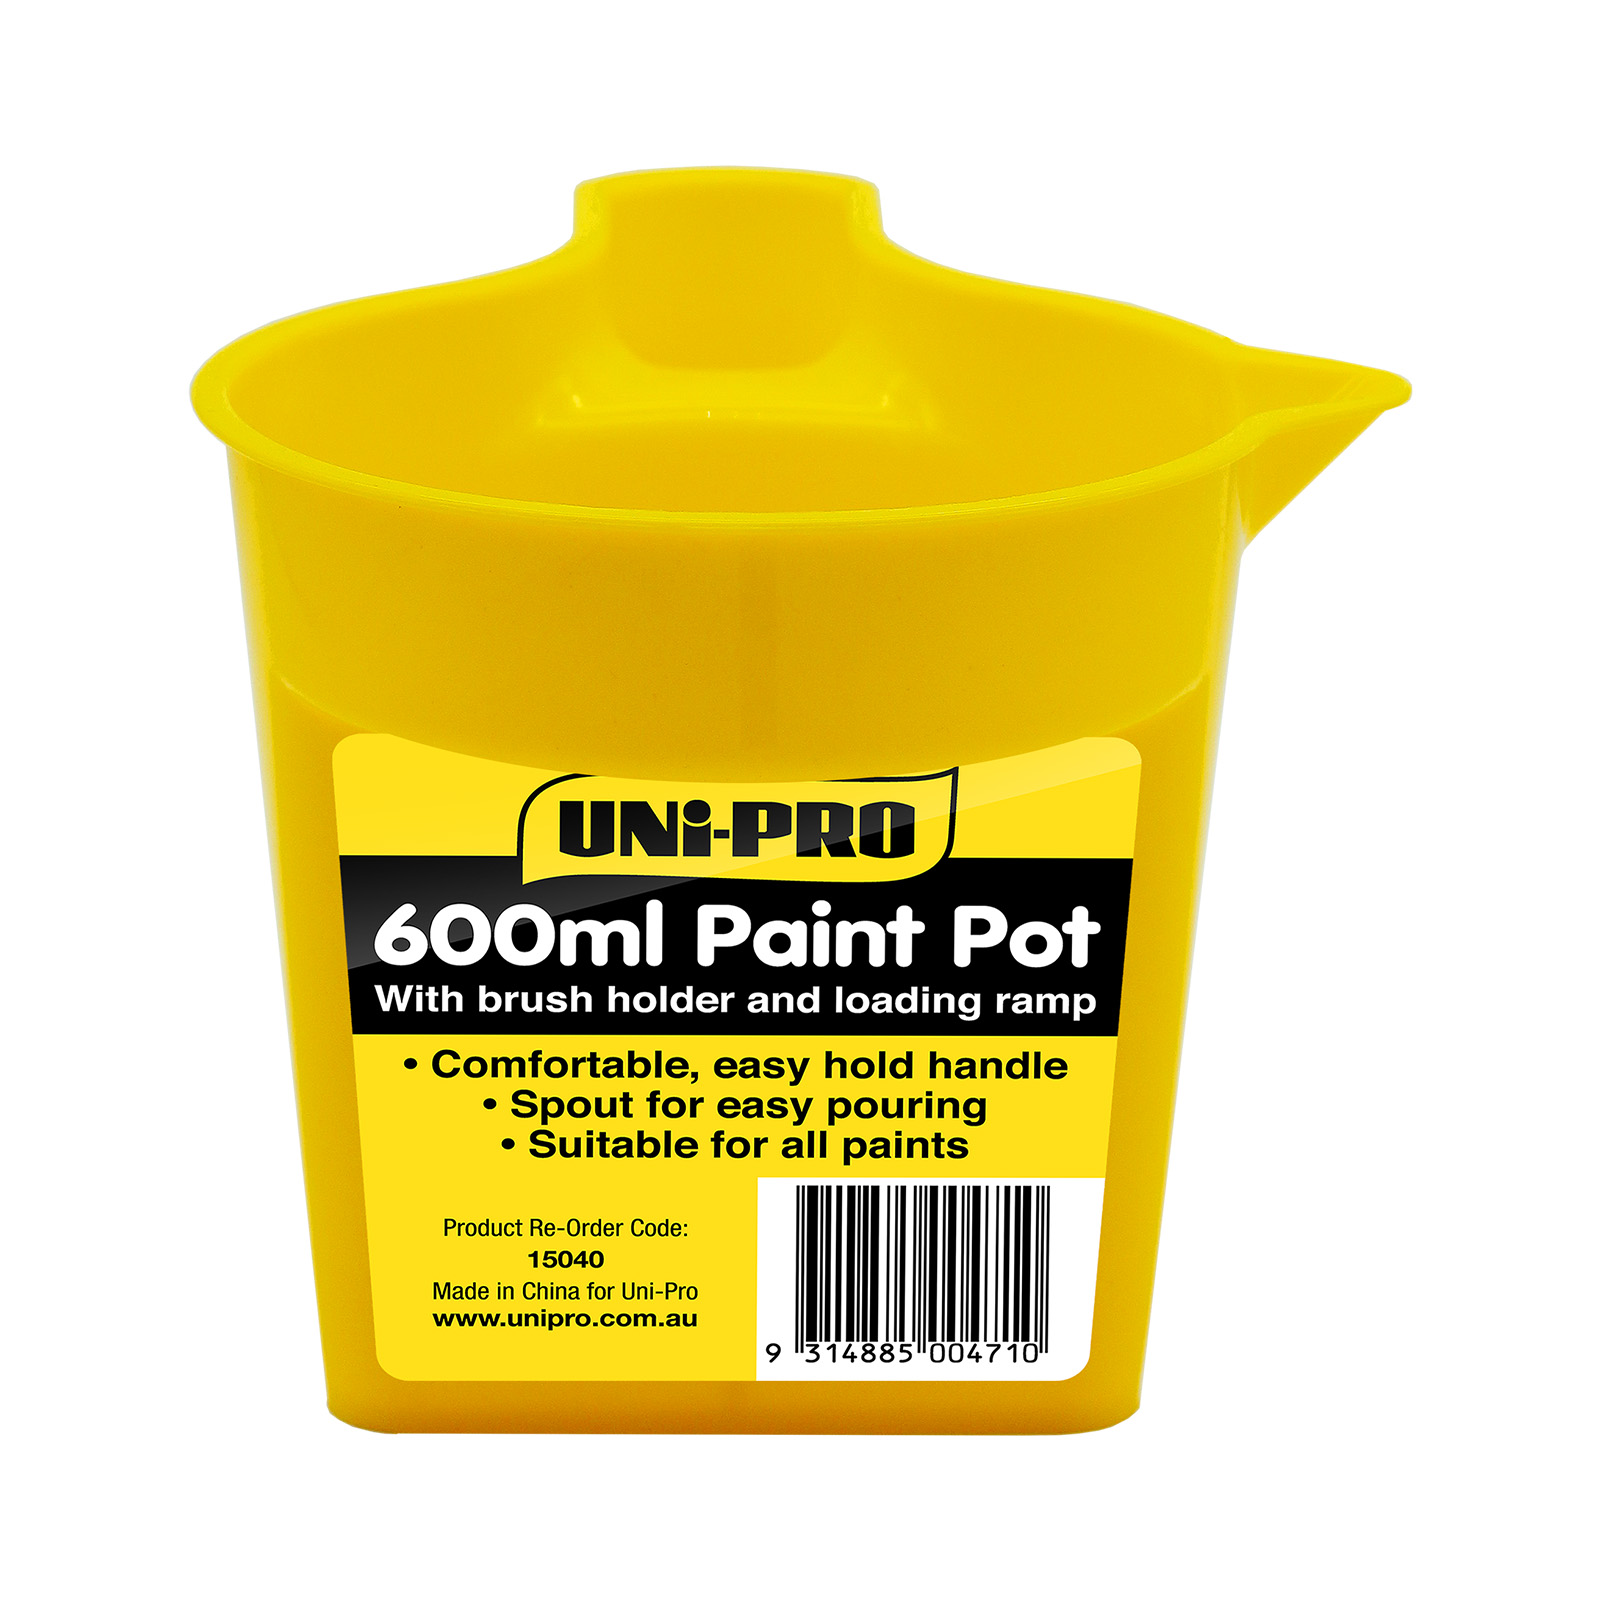 UNi-PRO 600ml Handy Paint Pot